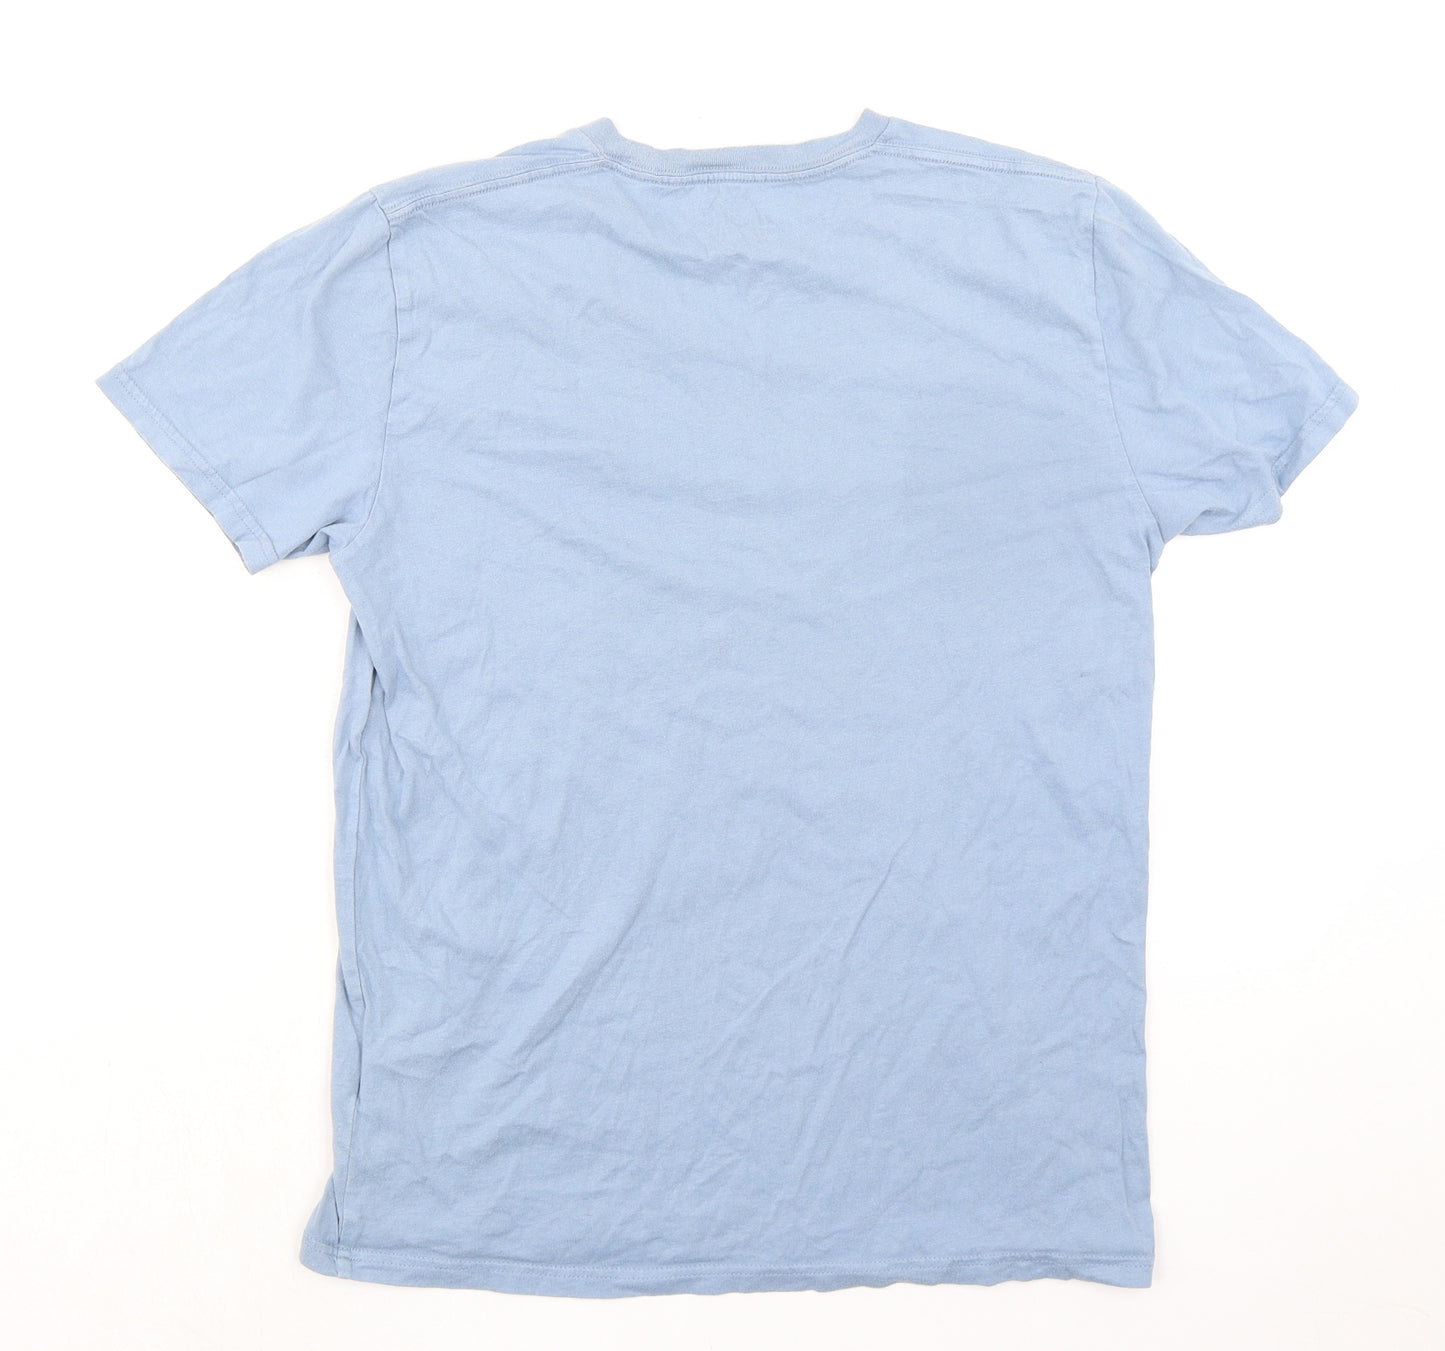 Hollister Mens Blue Cotton T-Shirt Size M Crew Neck